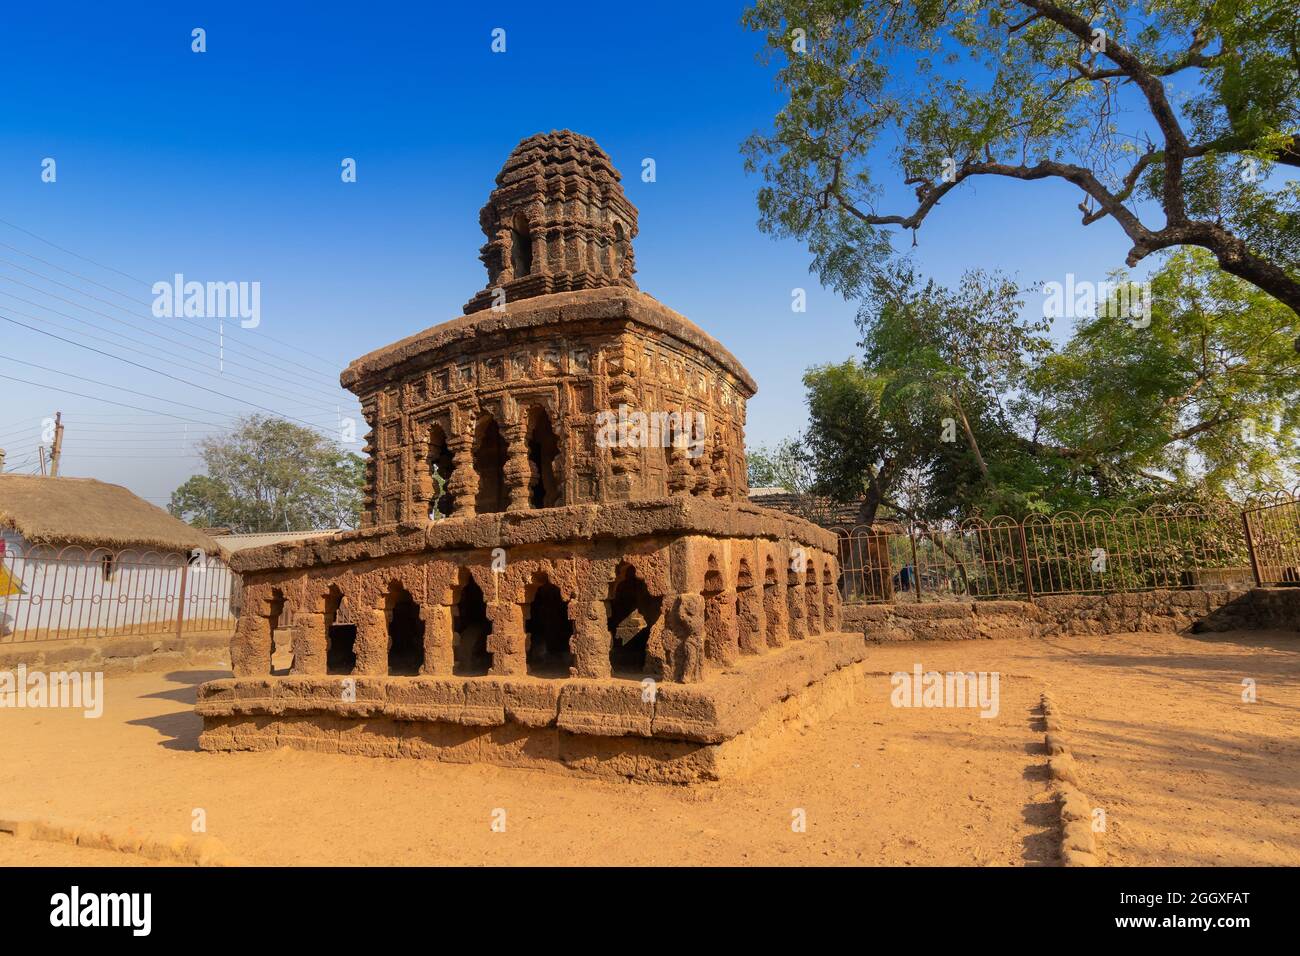 Steinwagen, konzeptuelles Modell der Bishnupur-Tempelarchitektur in Miniaturform. Kleine zweistöckige Struktur steht auf einem niedrigen Lateritsockel - Stockfoto